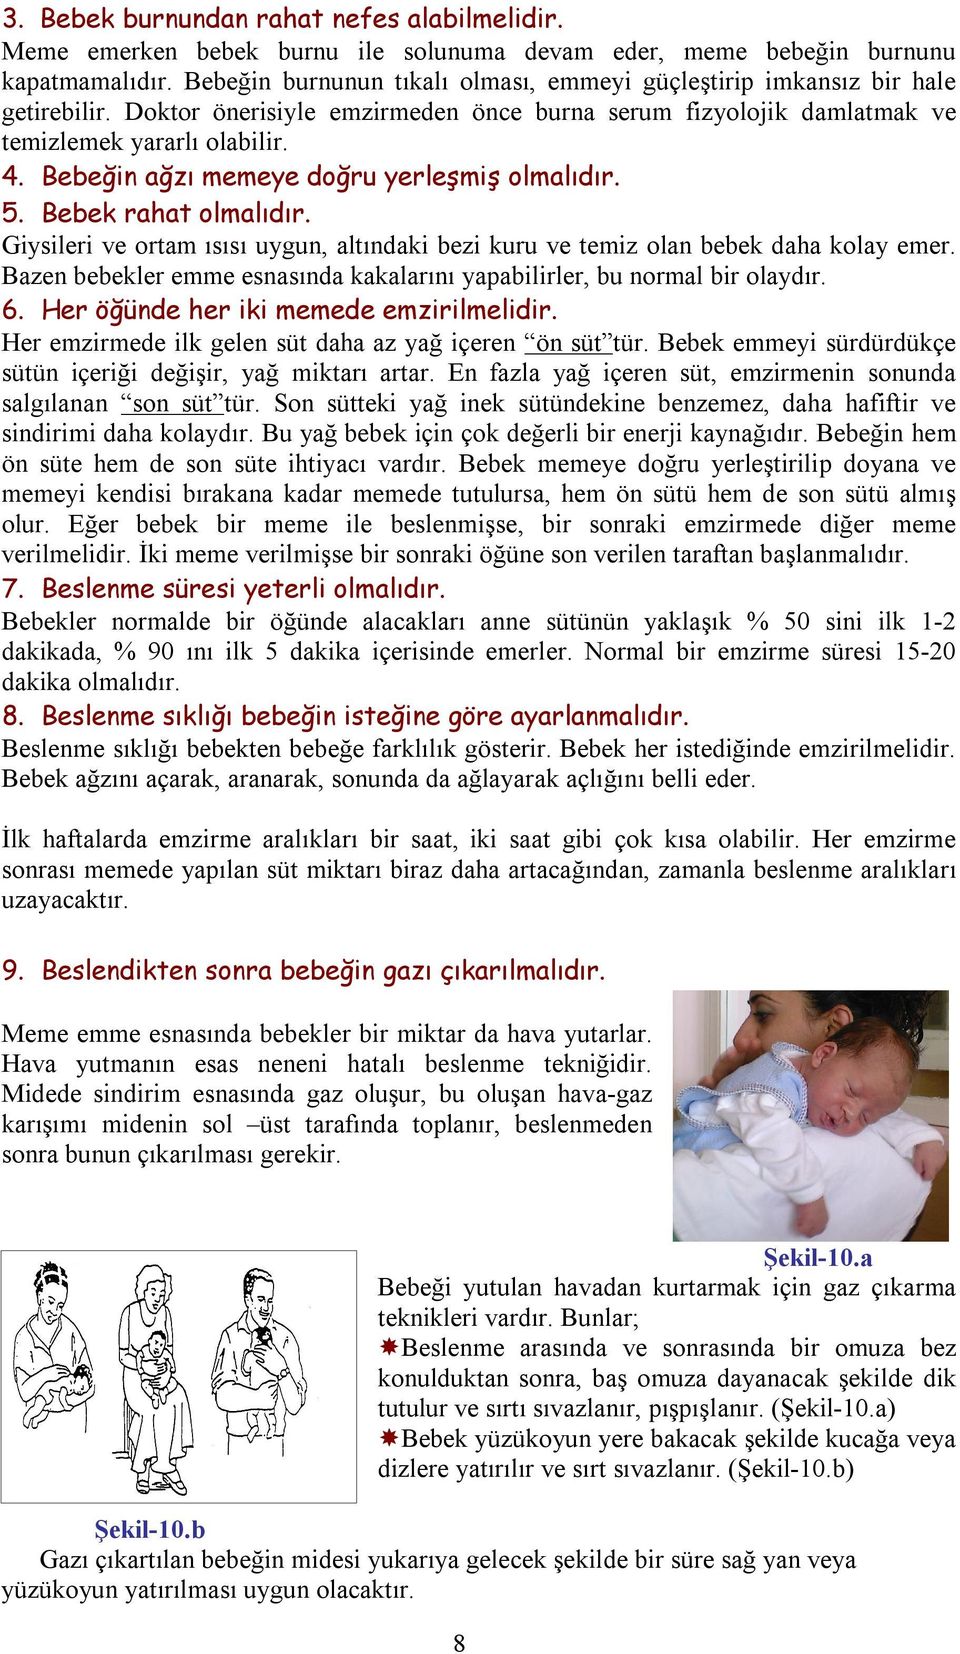 Bebeğin ağzı memeye doğru yerleşmiş olmalıdır. 5. Bebek rahat olmalıdır. Giysileri ve ortam ısısı uygun, altındaki bezi kuru ve temiz olan bebek daha kolay emer.